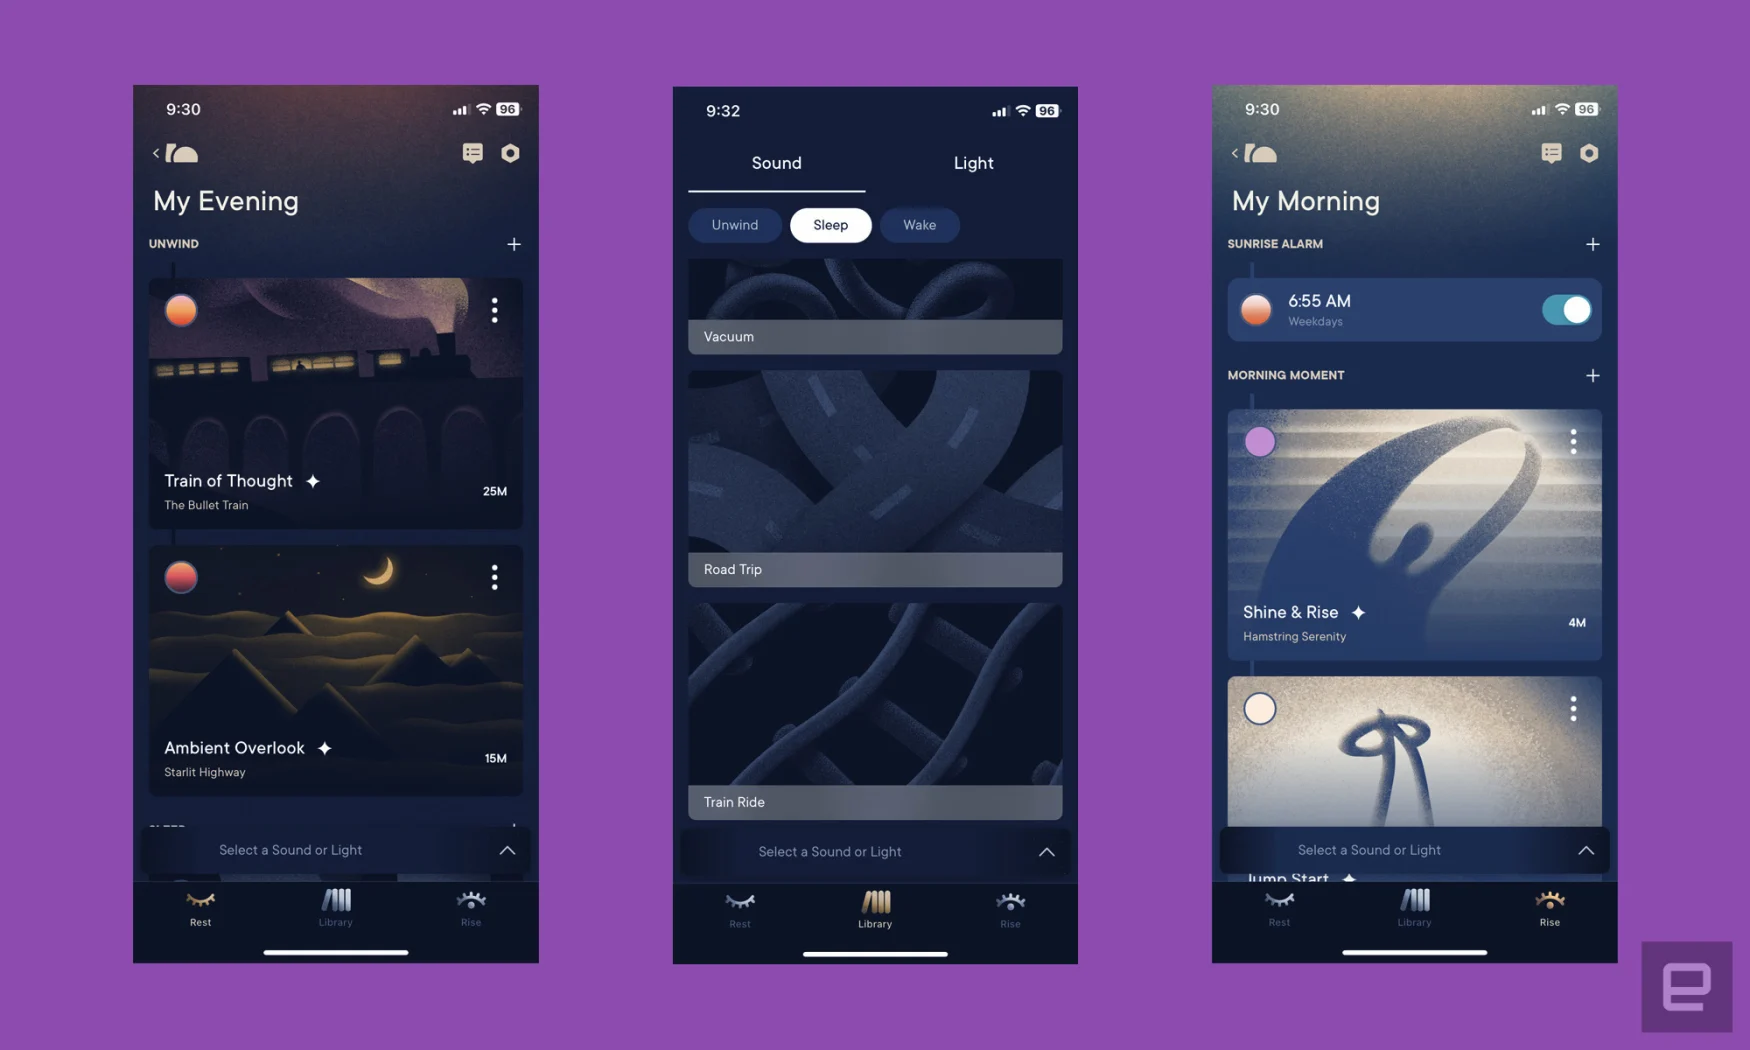 Tre schermate dell'app Hatch Sleep mostrano le opzioni dei contenuti per la sera, il sonno e la sveglia.  Le selezioni includono storie sul treno, rumore bianco del viaggio su strada e routine mattutina. 